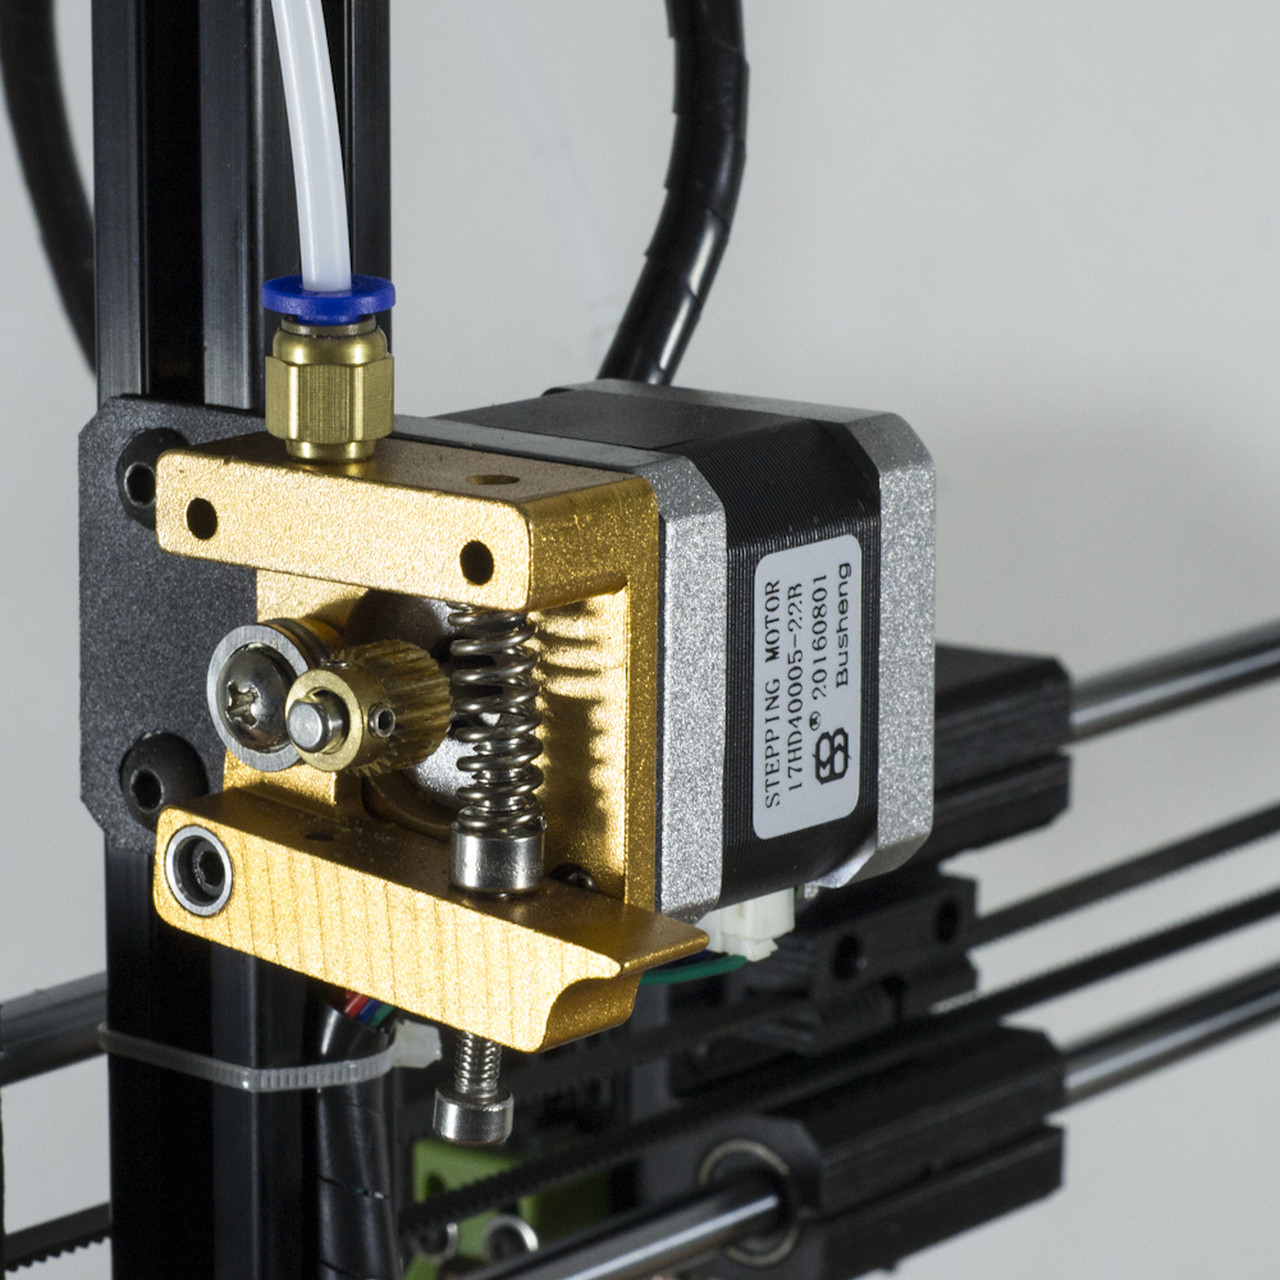 AutoLeveling 3D Printer